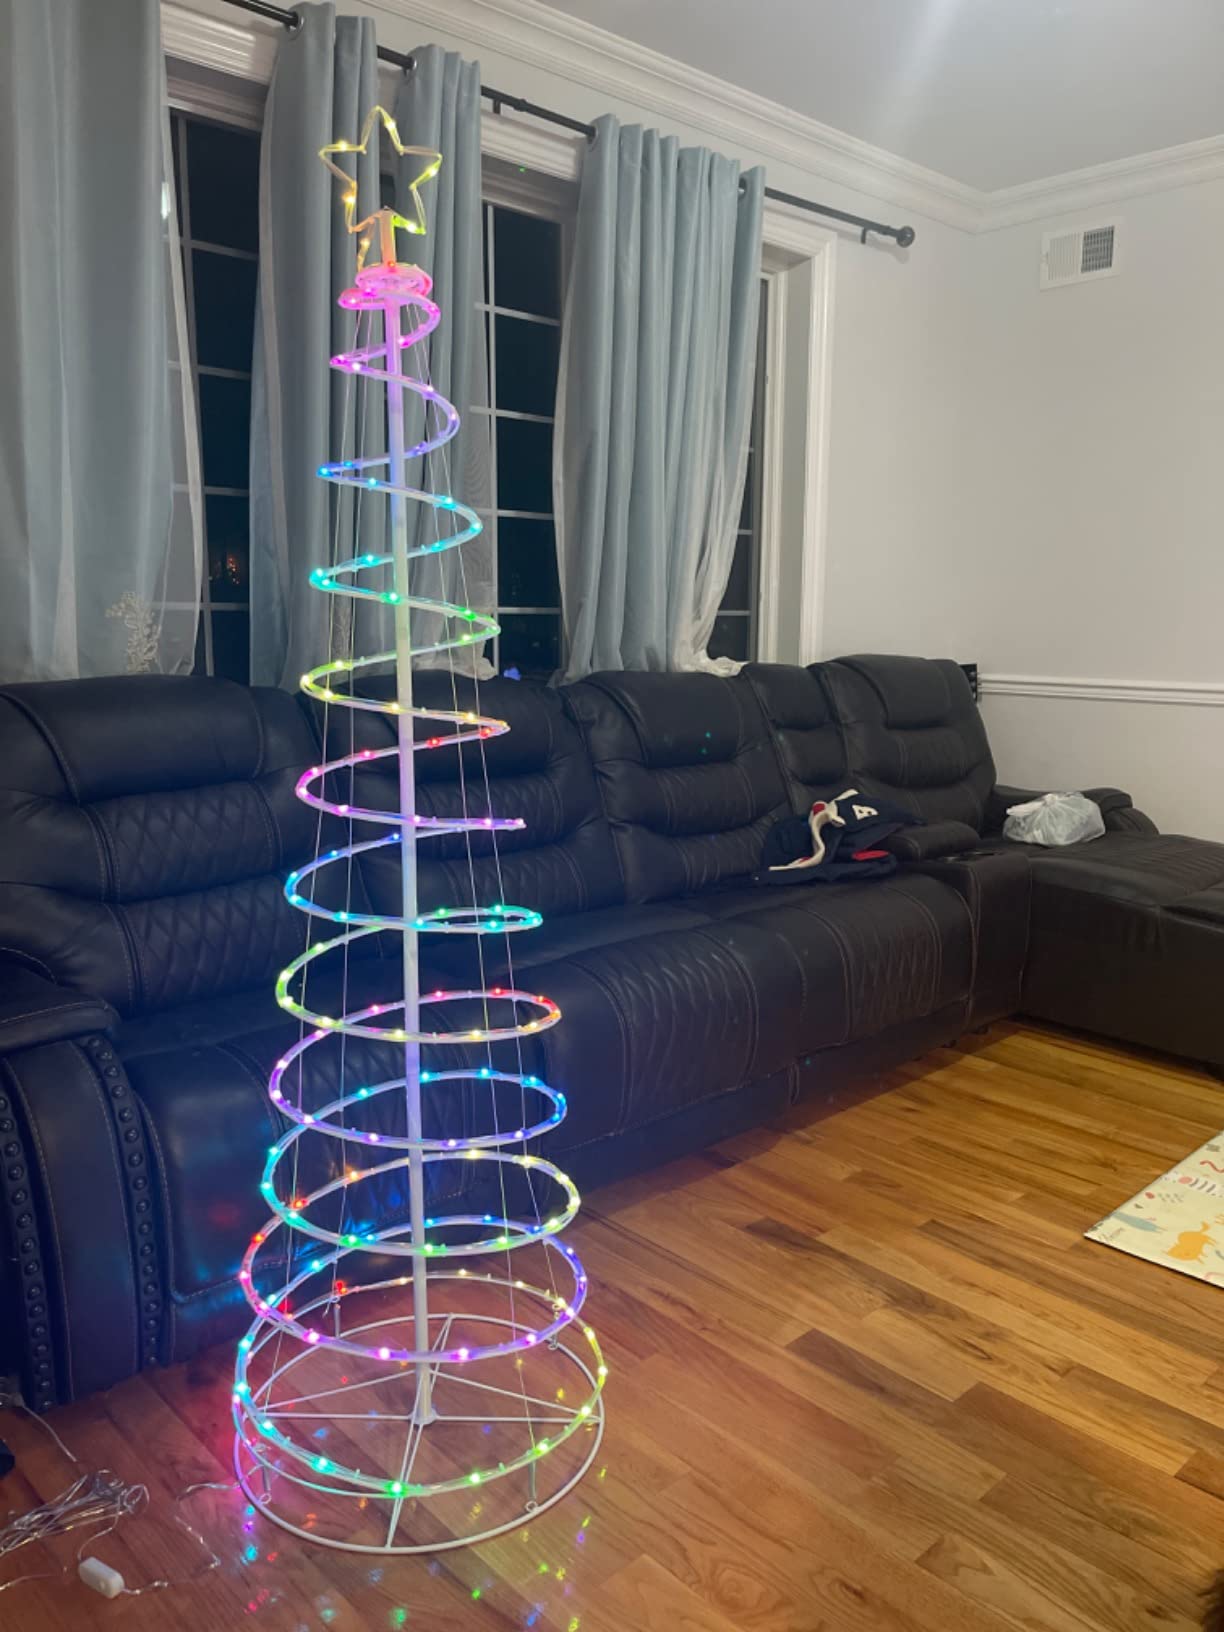 6 ft. spiral christmas tree